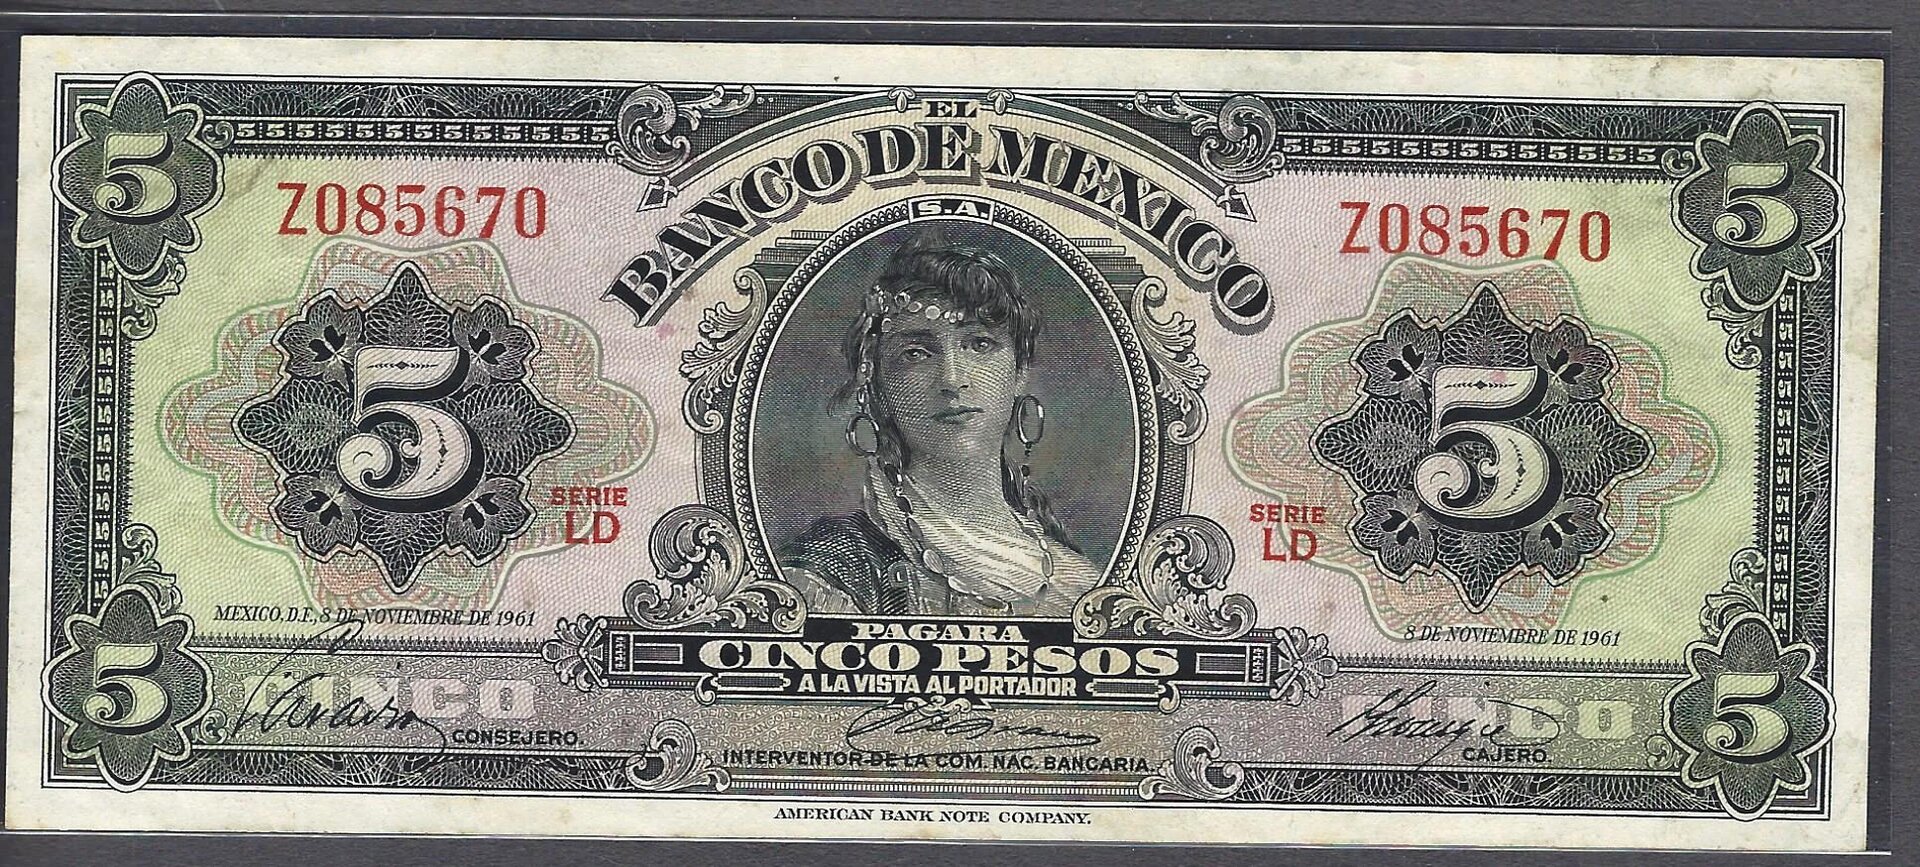 mexico_1961_5 pesos_serie-LD_Z085670__woman_face.jpg